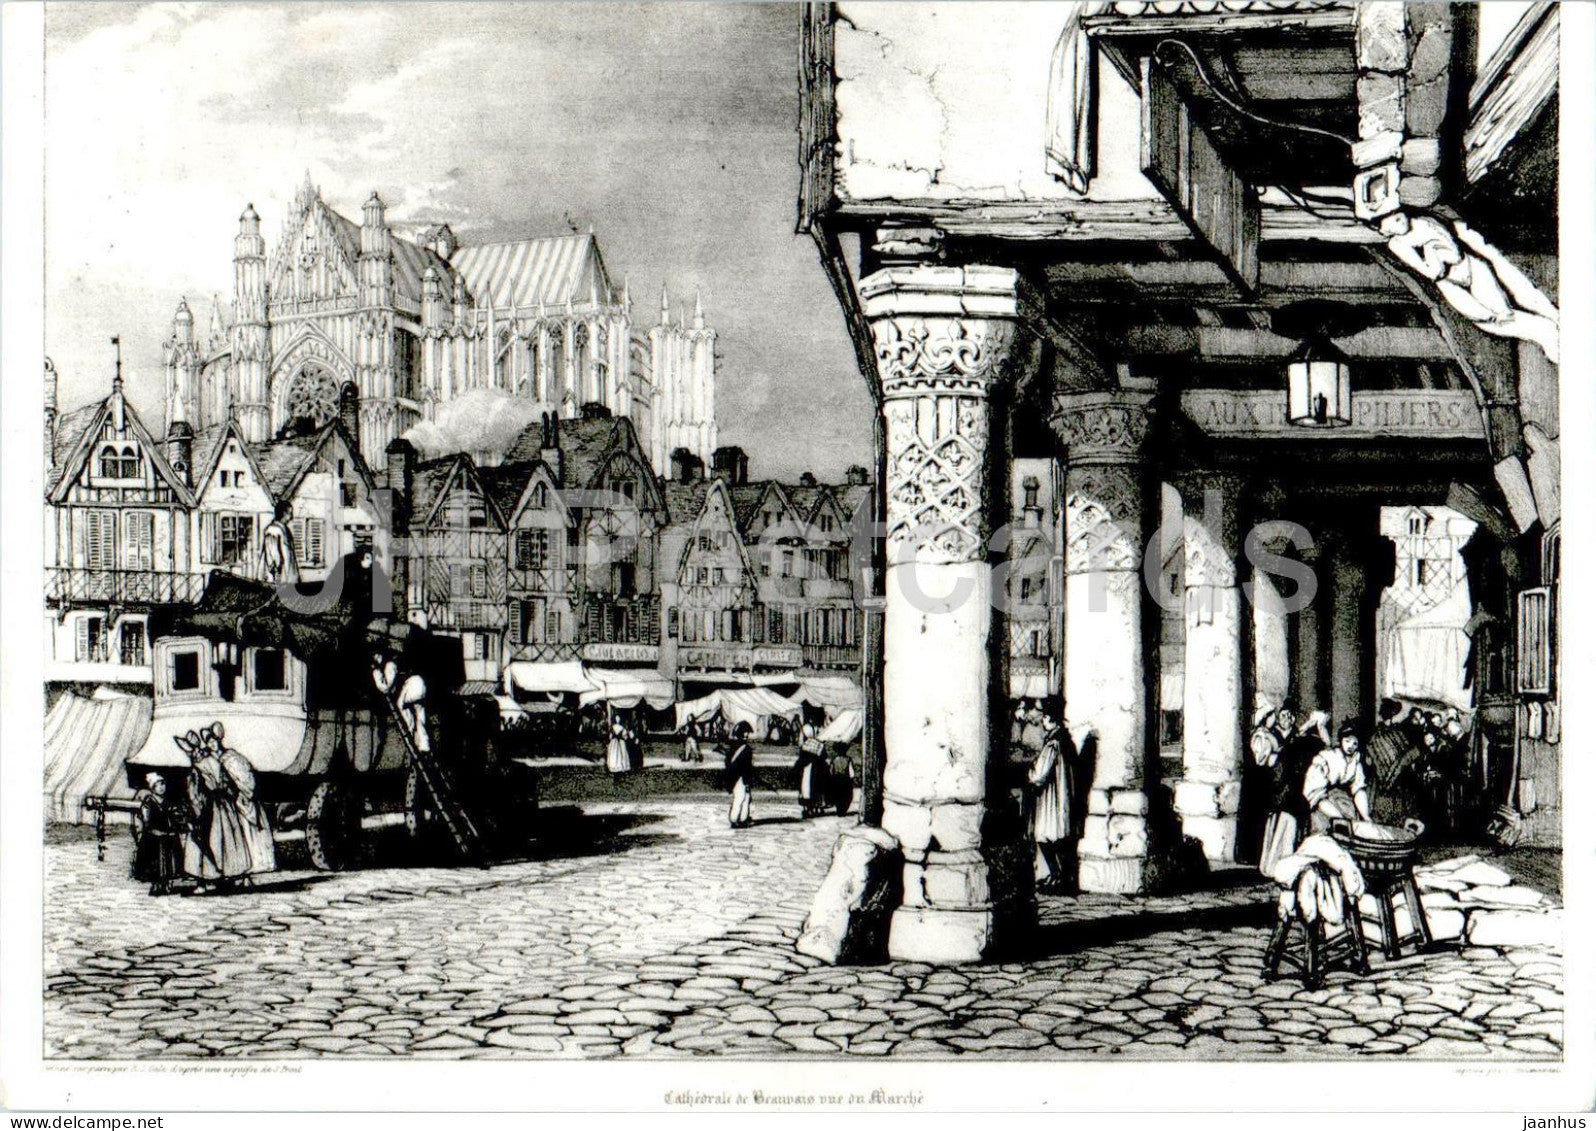 Beauvais - In Taylor et Nodier Picardie - Place de l'Hotel de Ville - illustration France - unused - JH Postcards